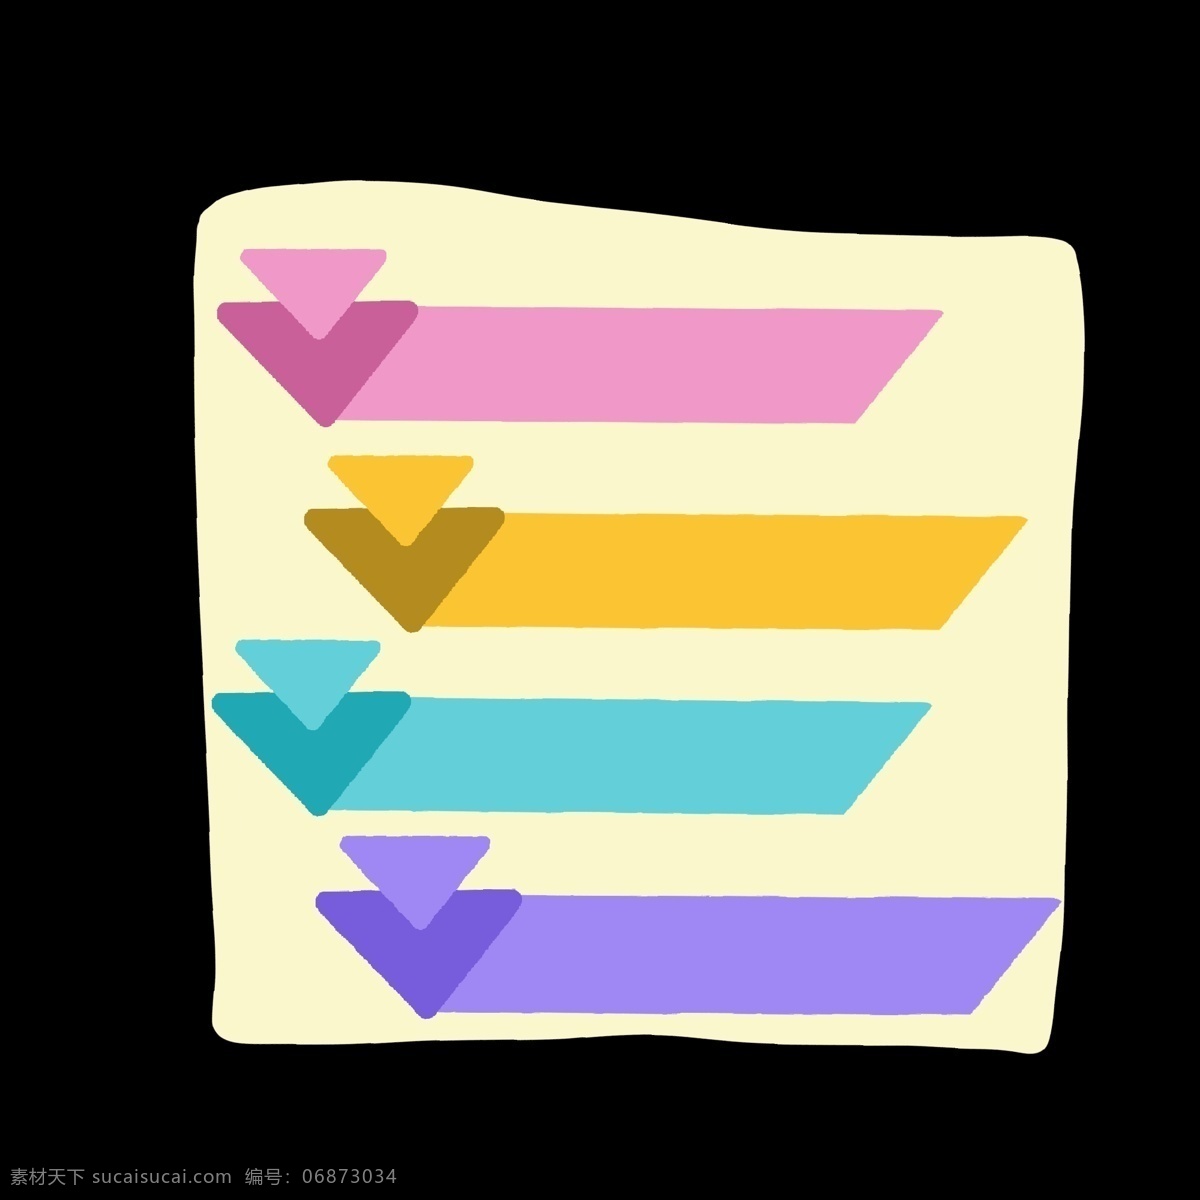 倒三角形 分类 图标 彩色 分别开 区分开 ppt专用 卡通 简约 简单 简洁 分解图 分化表